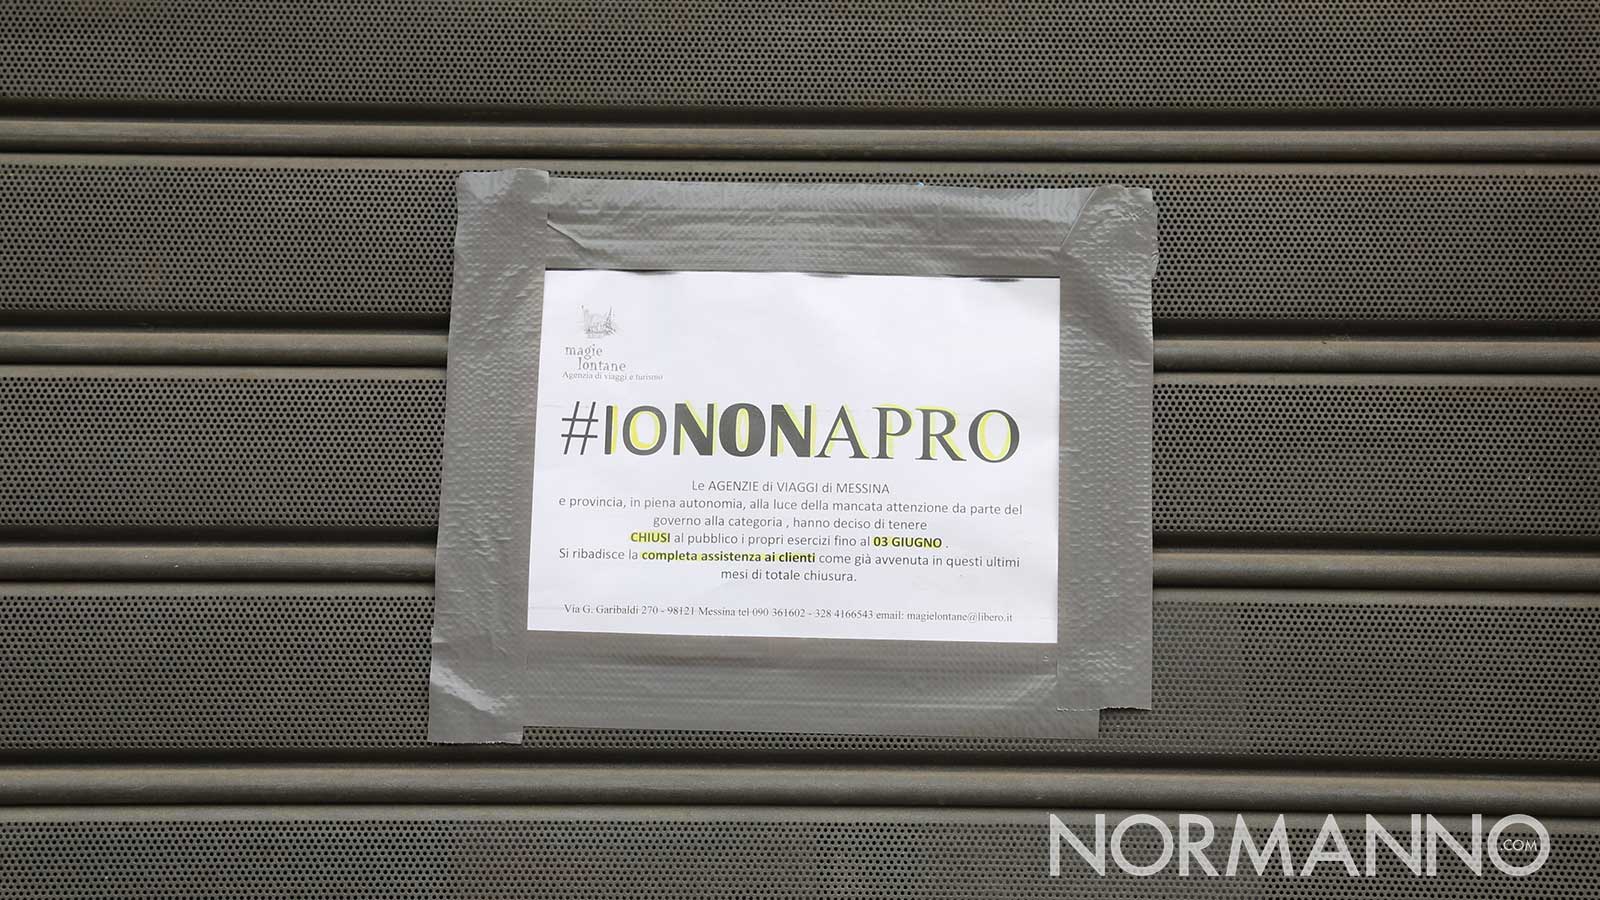 foto di una saracinesca abbassata con l'hashtag #iononapro a causa del coronavirus